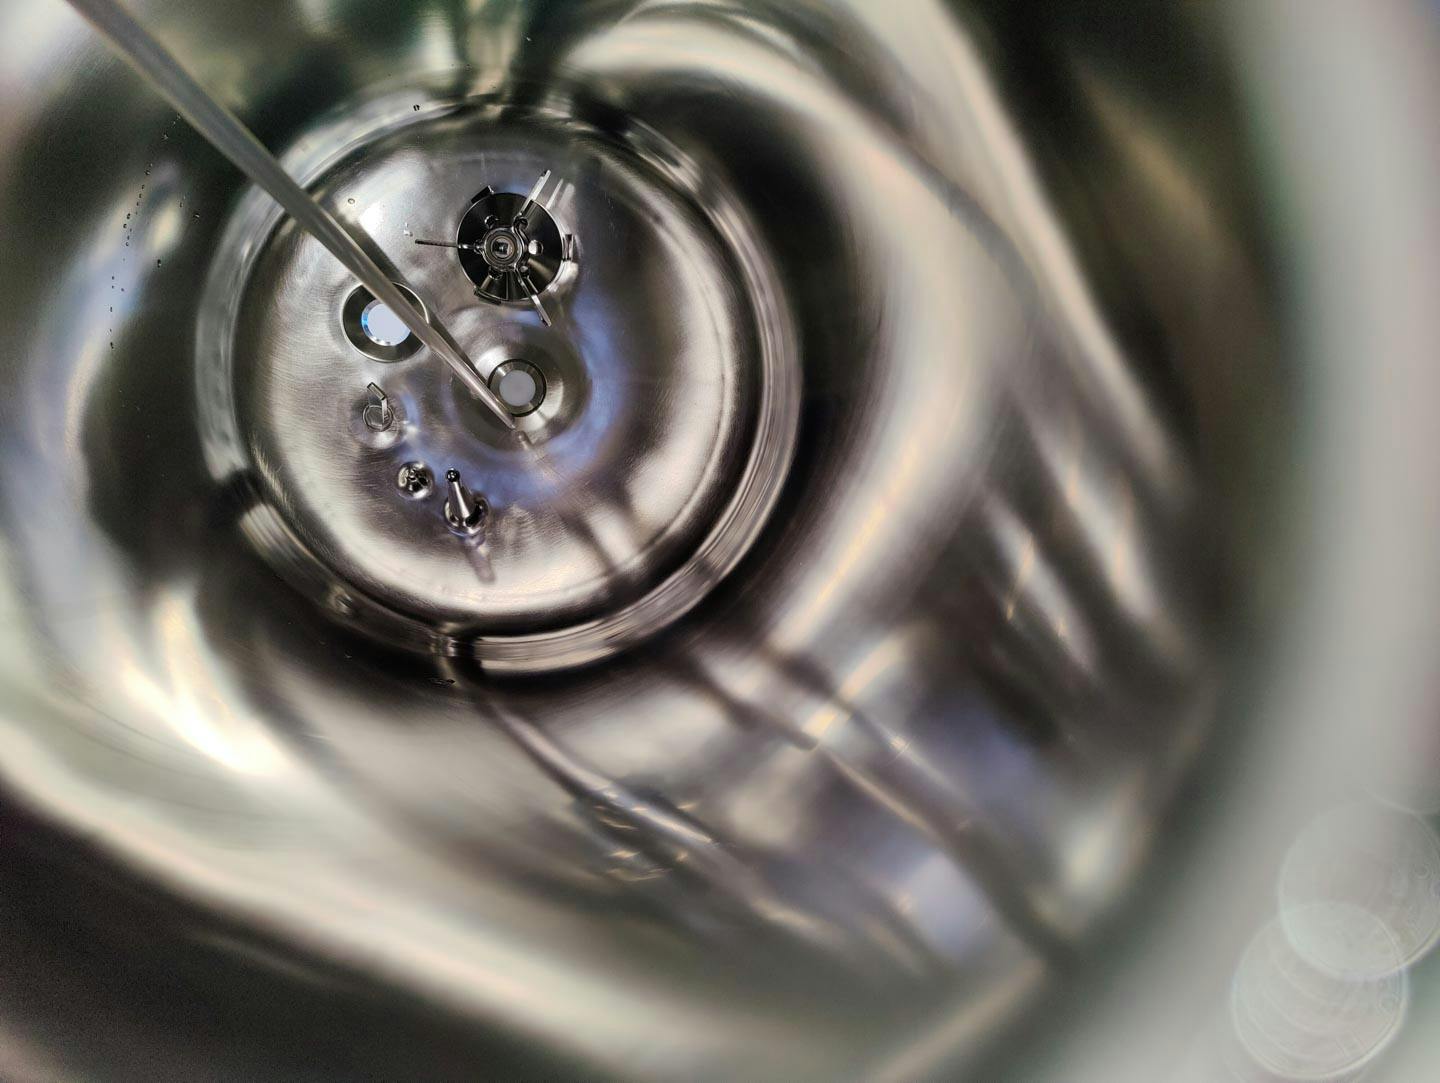 Edelstahl Maurer 167 Ltr. - Mirror-Polished Fraction Collector (Pharma Design) - Reactor de aço inoxidável - image 7